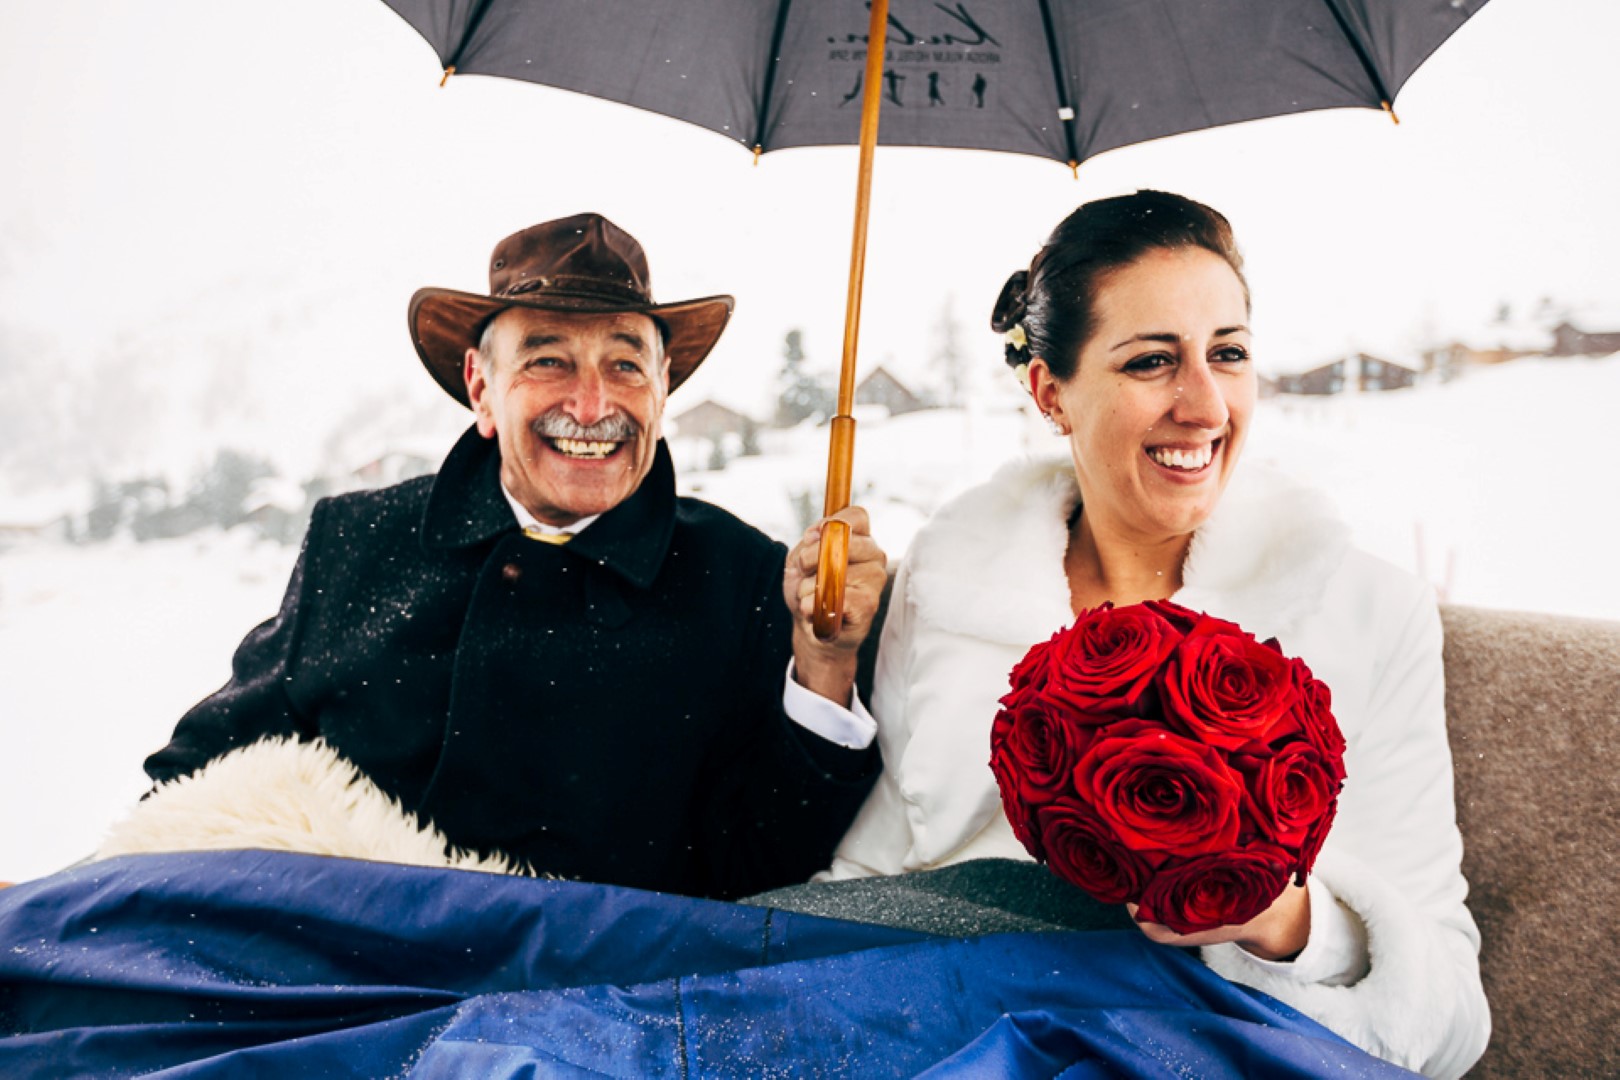 Hochzeit von Danielle und Andy in Arosa vom 01. März 2014.